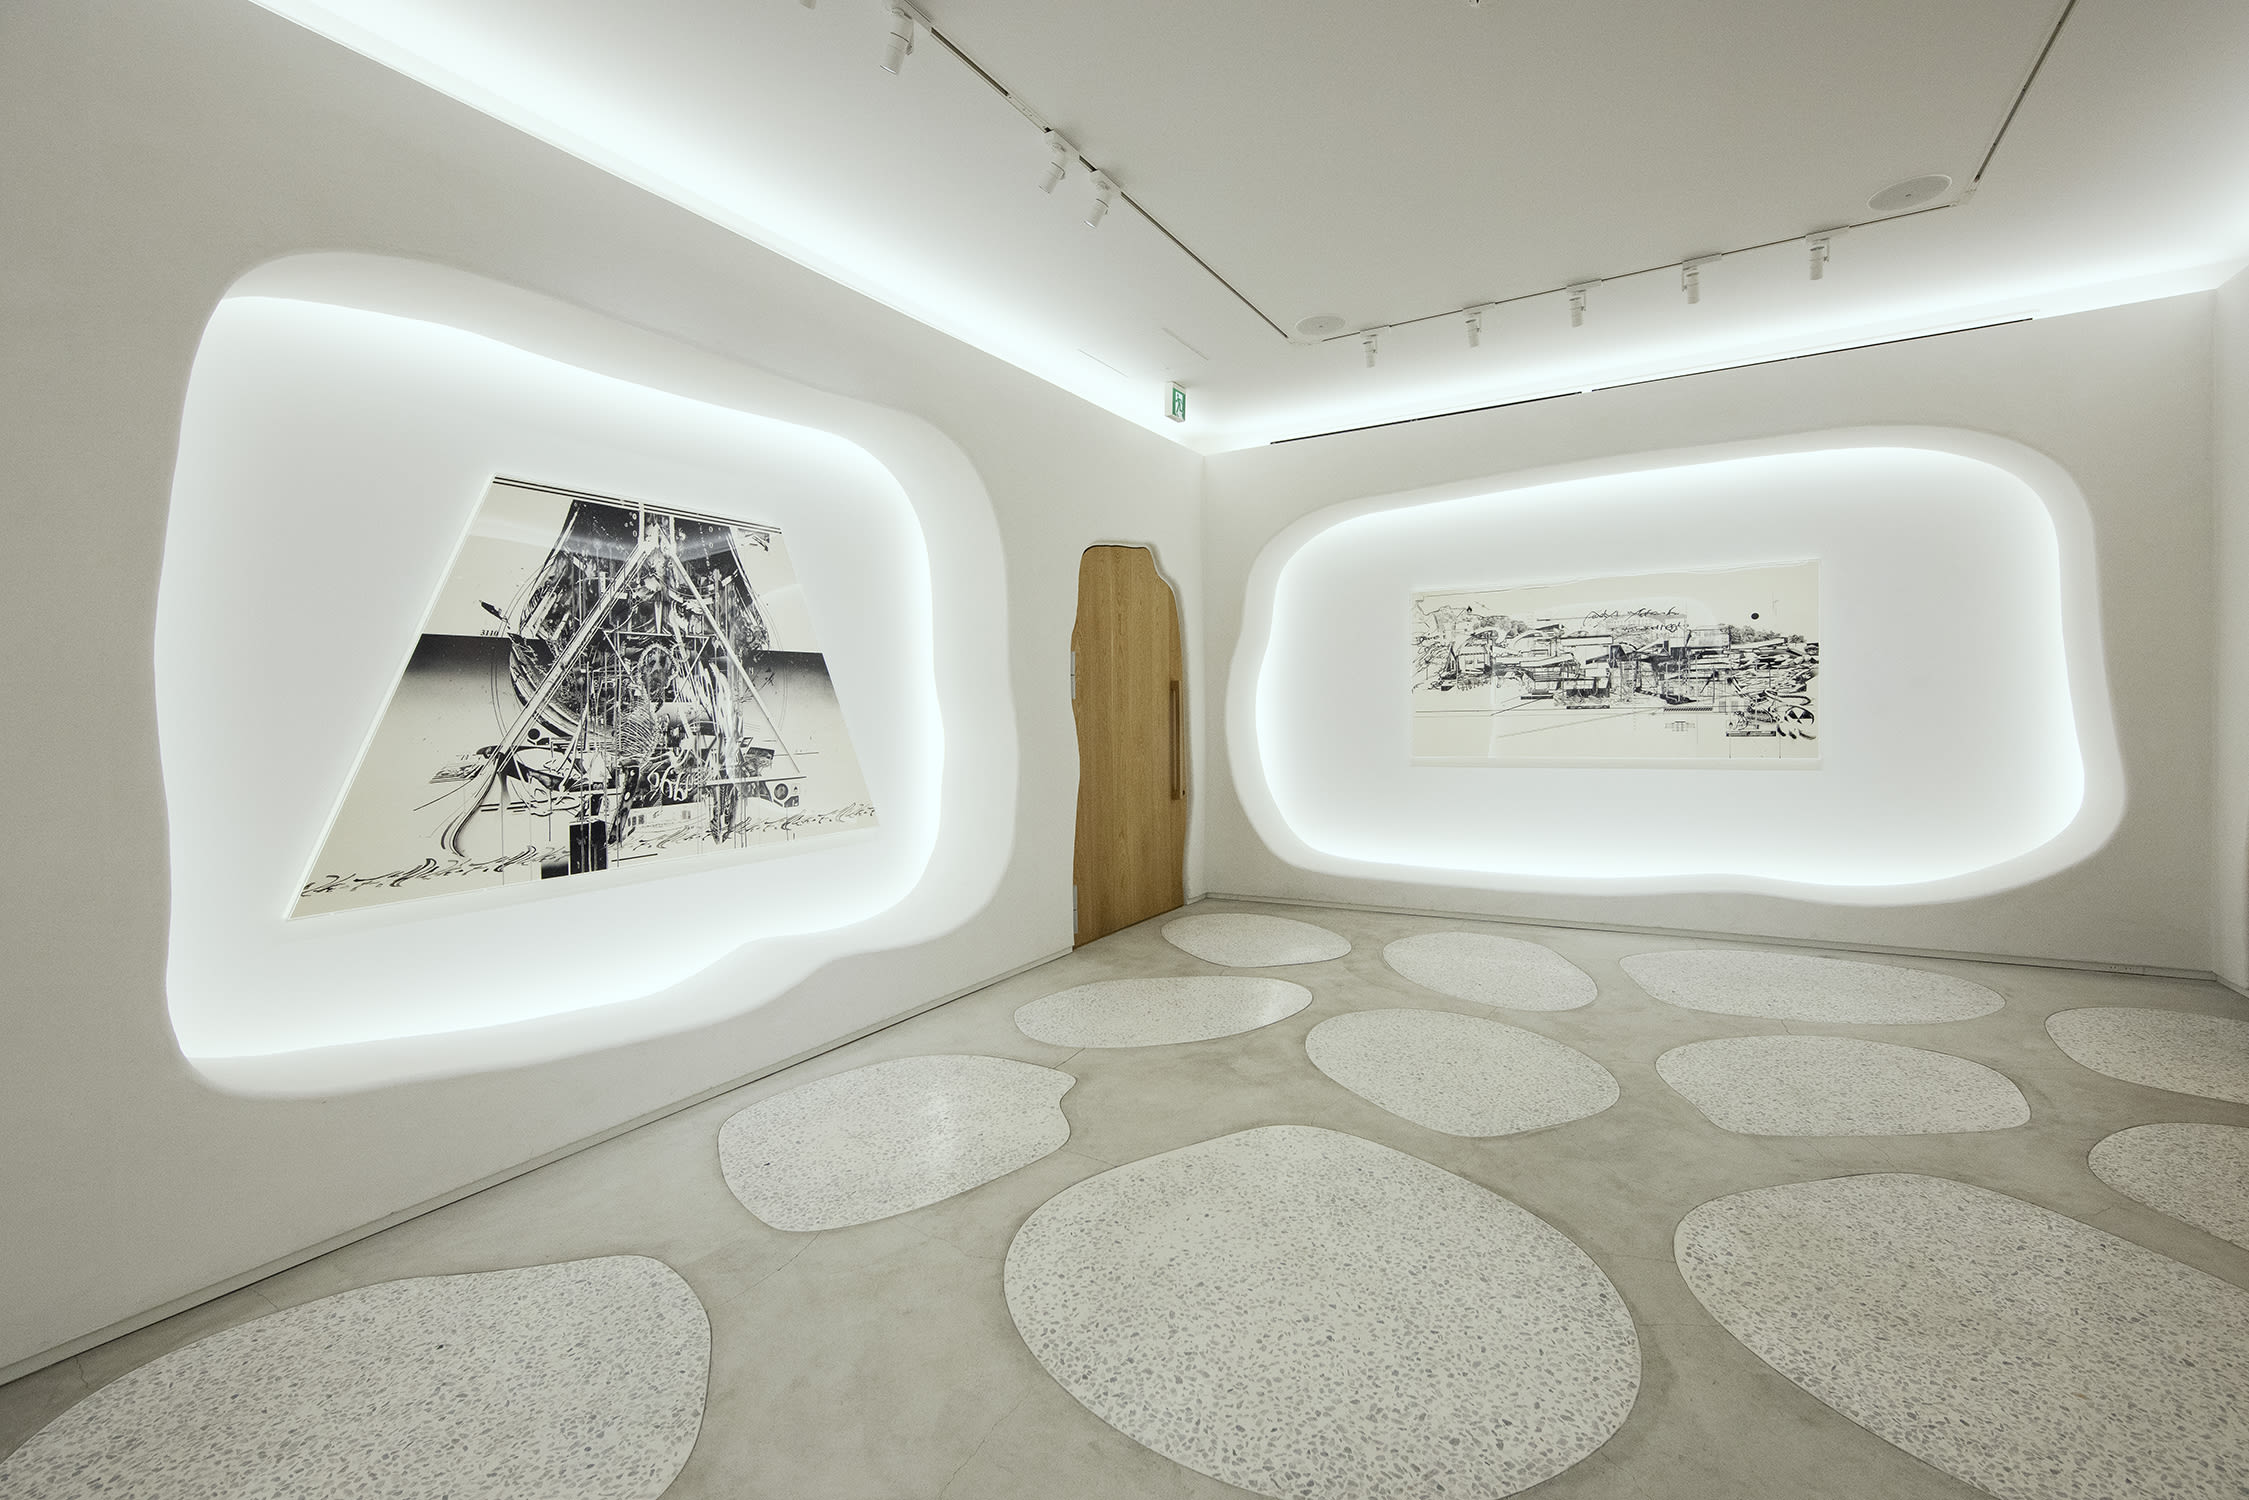 Installation view of Hiroki Tsukuda's exhibition '4021', 3110NZ by LDH Kitchen, Tokyo. Courtesy of Nanzuka, Tokyo. ©︎ Hiroki Tsukuda.